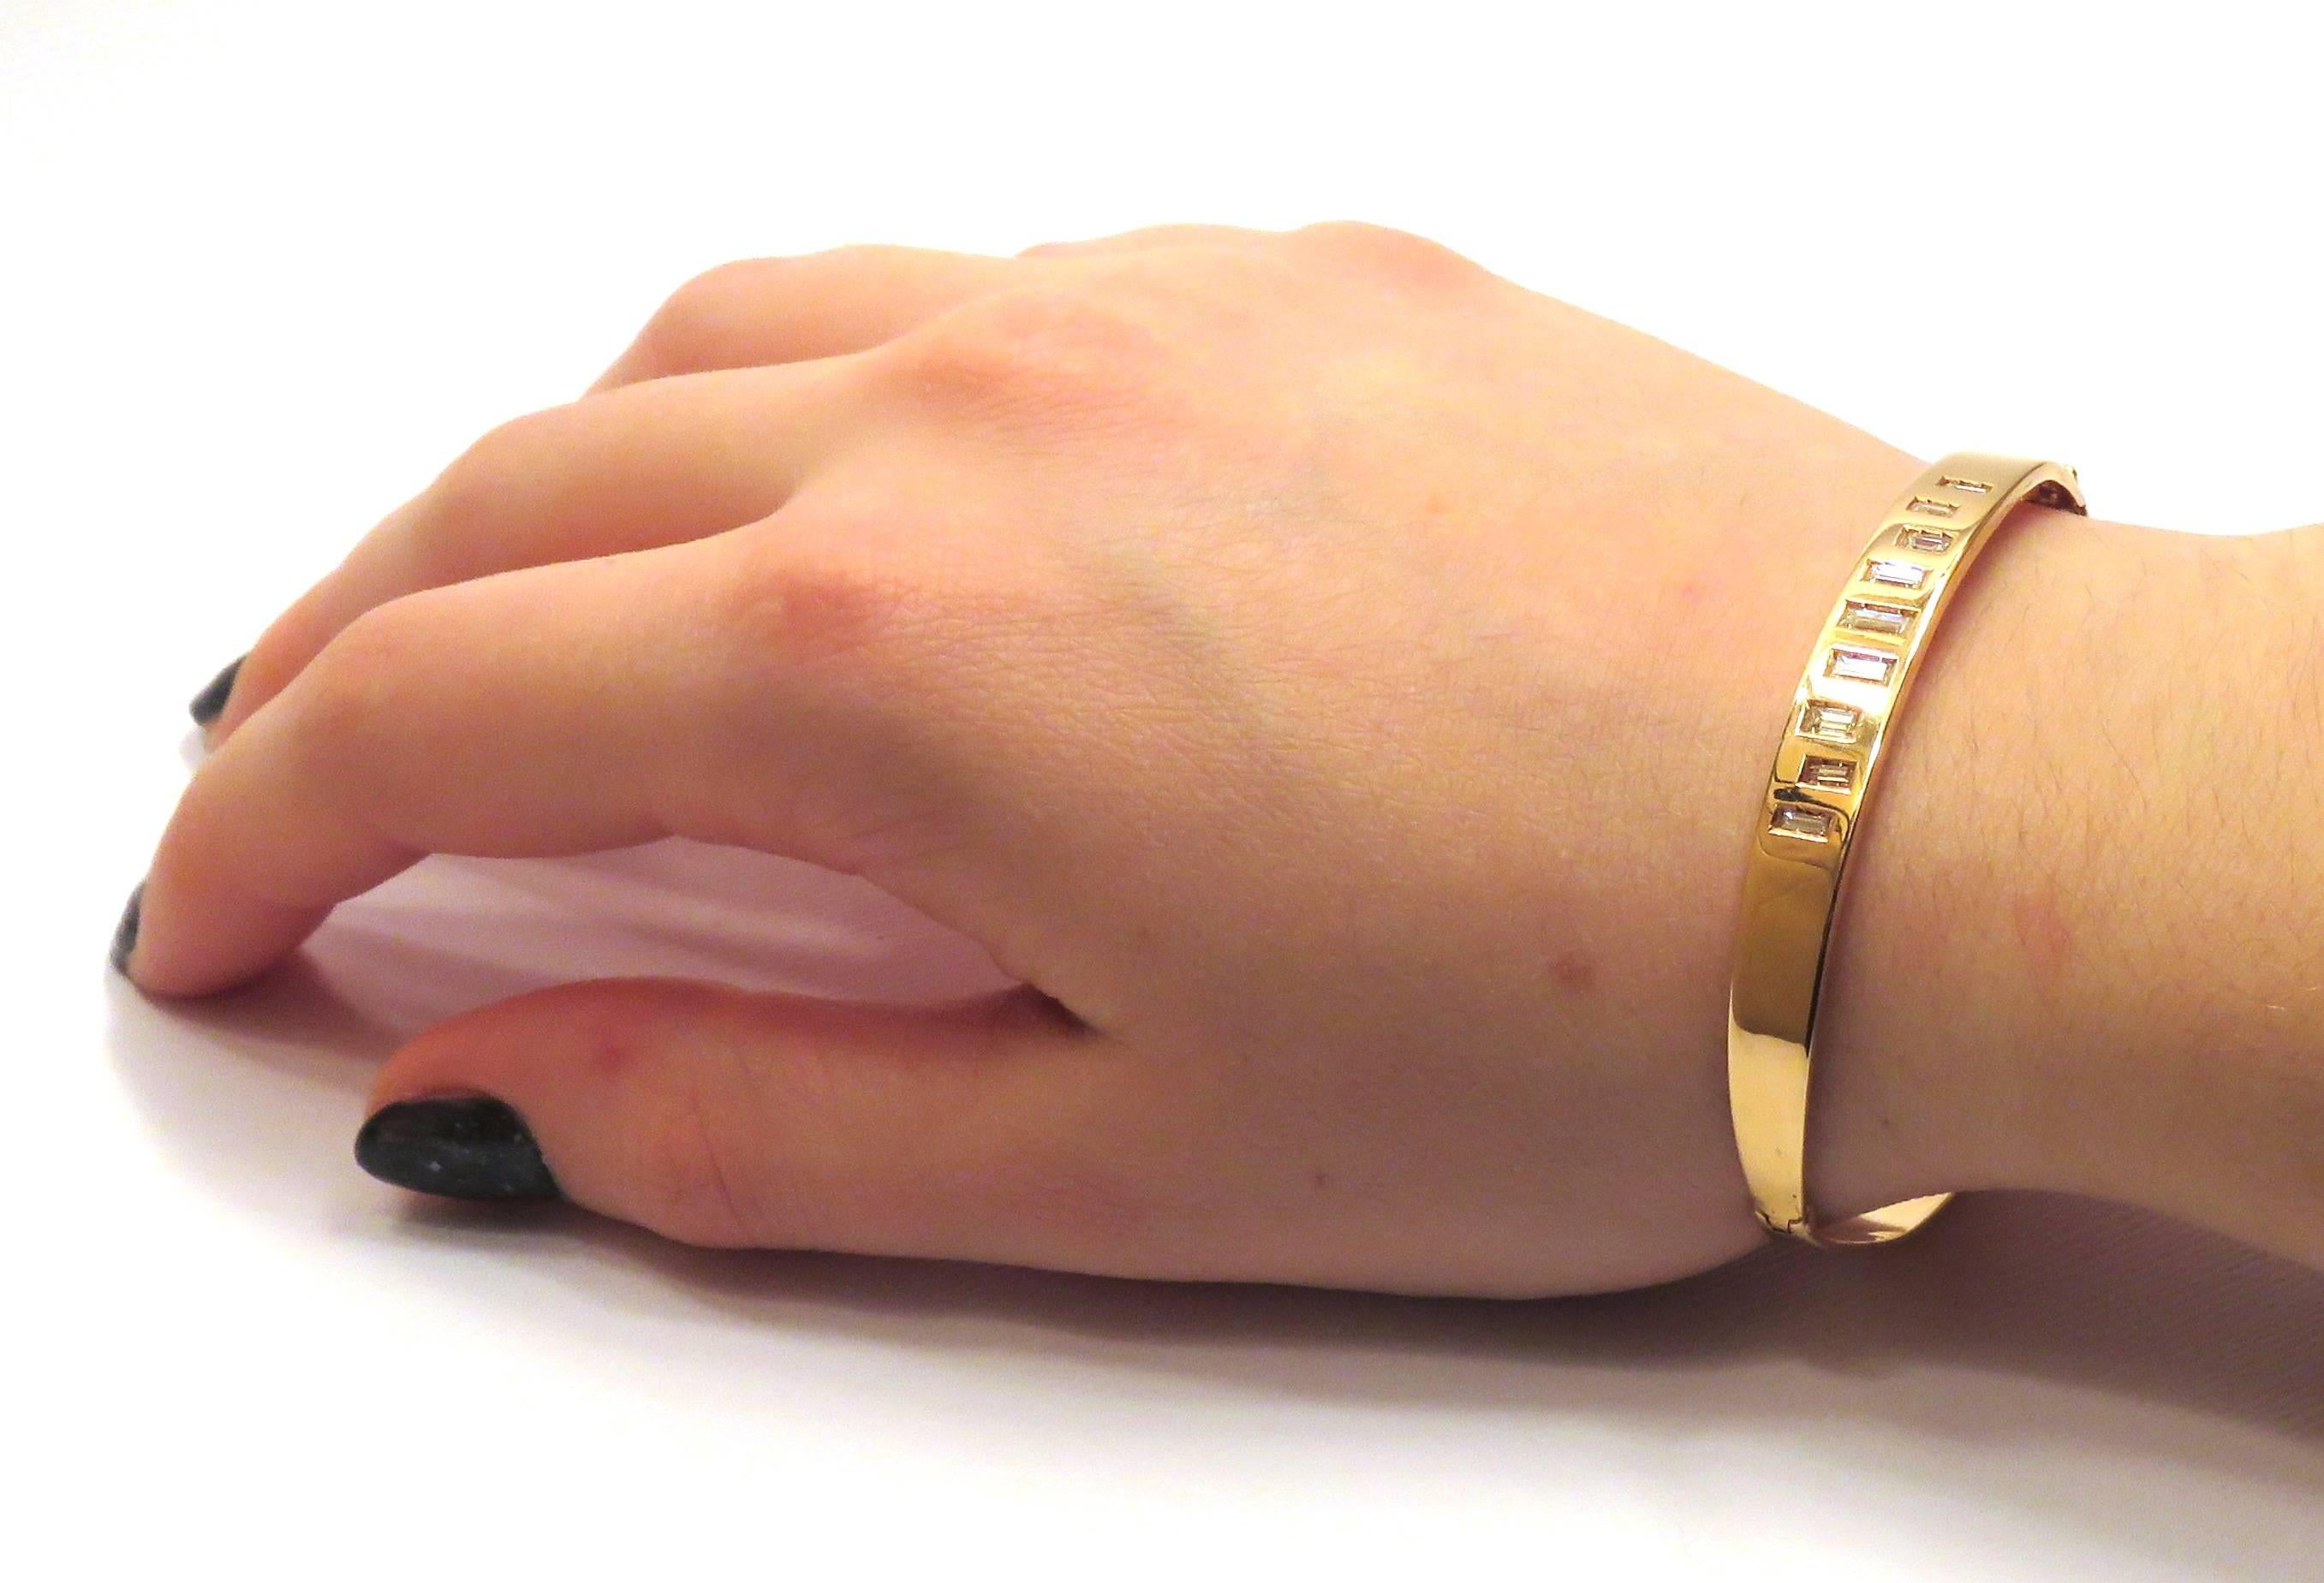 Armband aus 18 Kt Roségold mit Diamanten 0,60 ctw.
Das Rigid Diamonds Code Bracelet des italienischen Schmuckhauses Botta Gioielli ist Teil der Diamond Code Kollektion, die von klaren Linien und Symmetrie inspiriert ist. Der schlichte Armreif aus